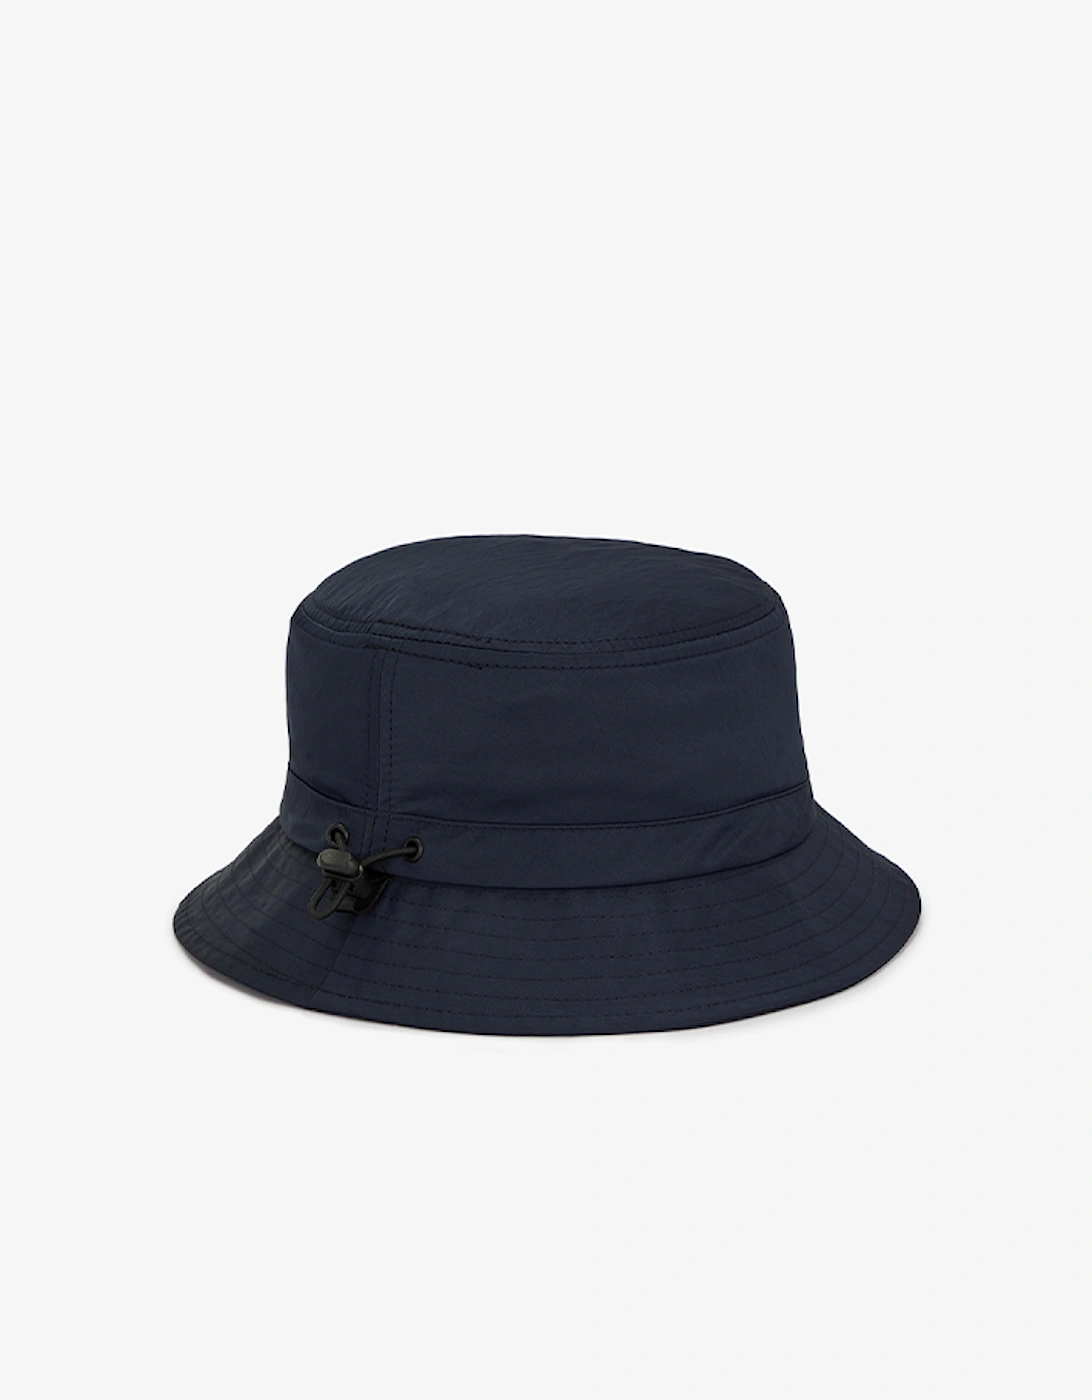 Men's Adjustable Bucket Hat